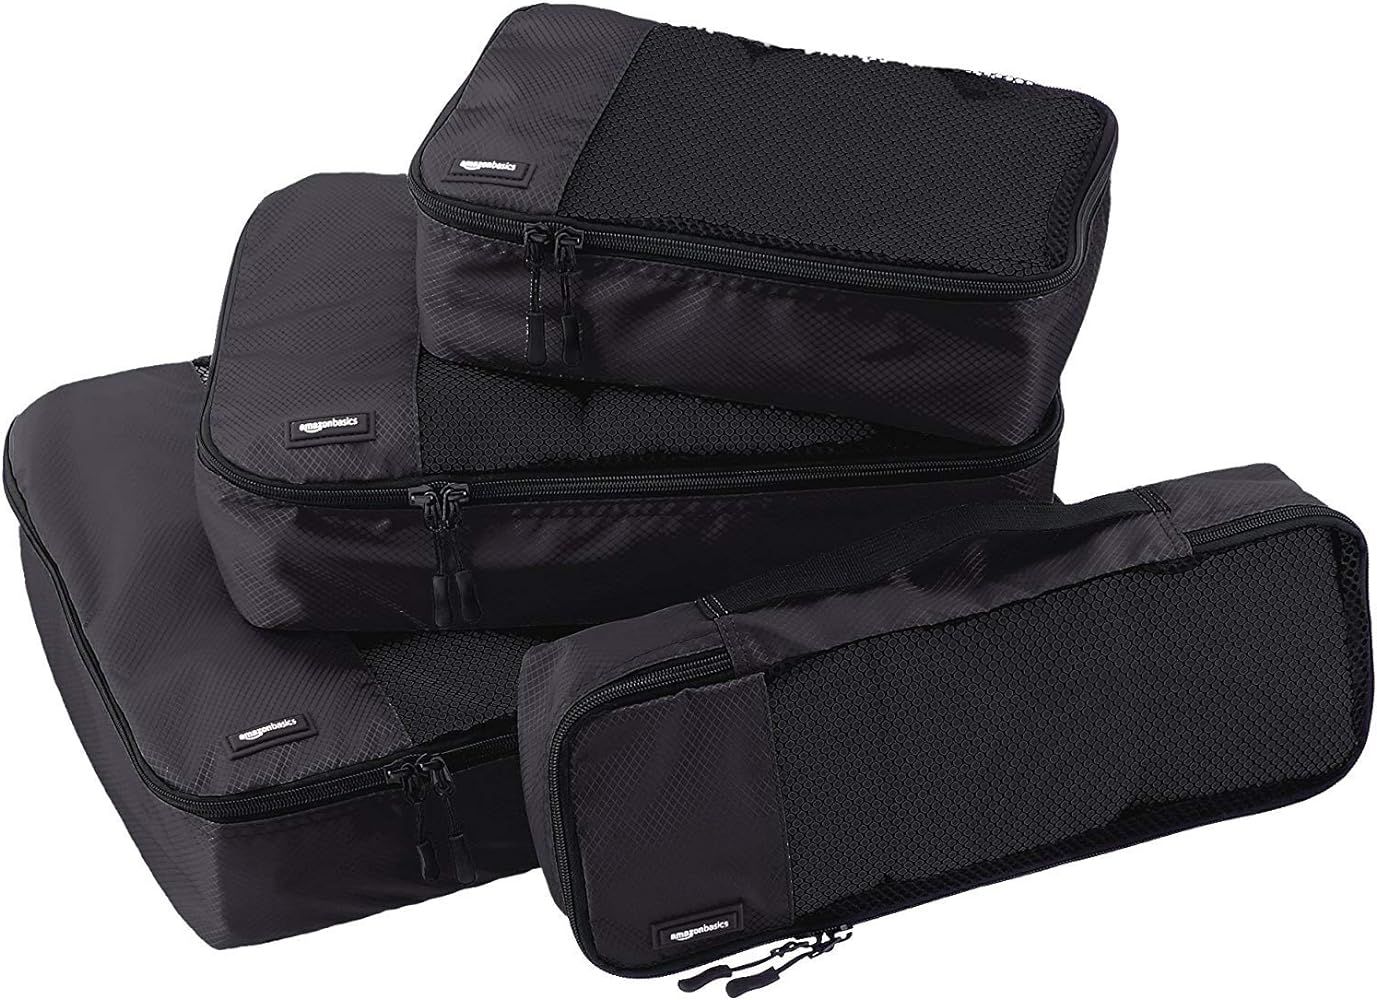 Amazon Basics 4 Piece Packing Travel Organizer Cubes Set, Black | Amazon (US)